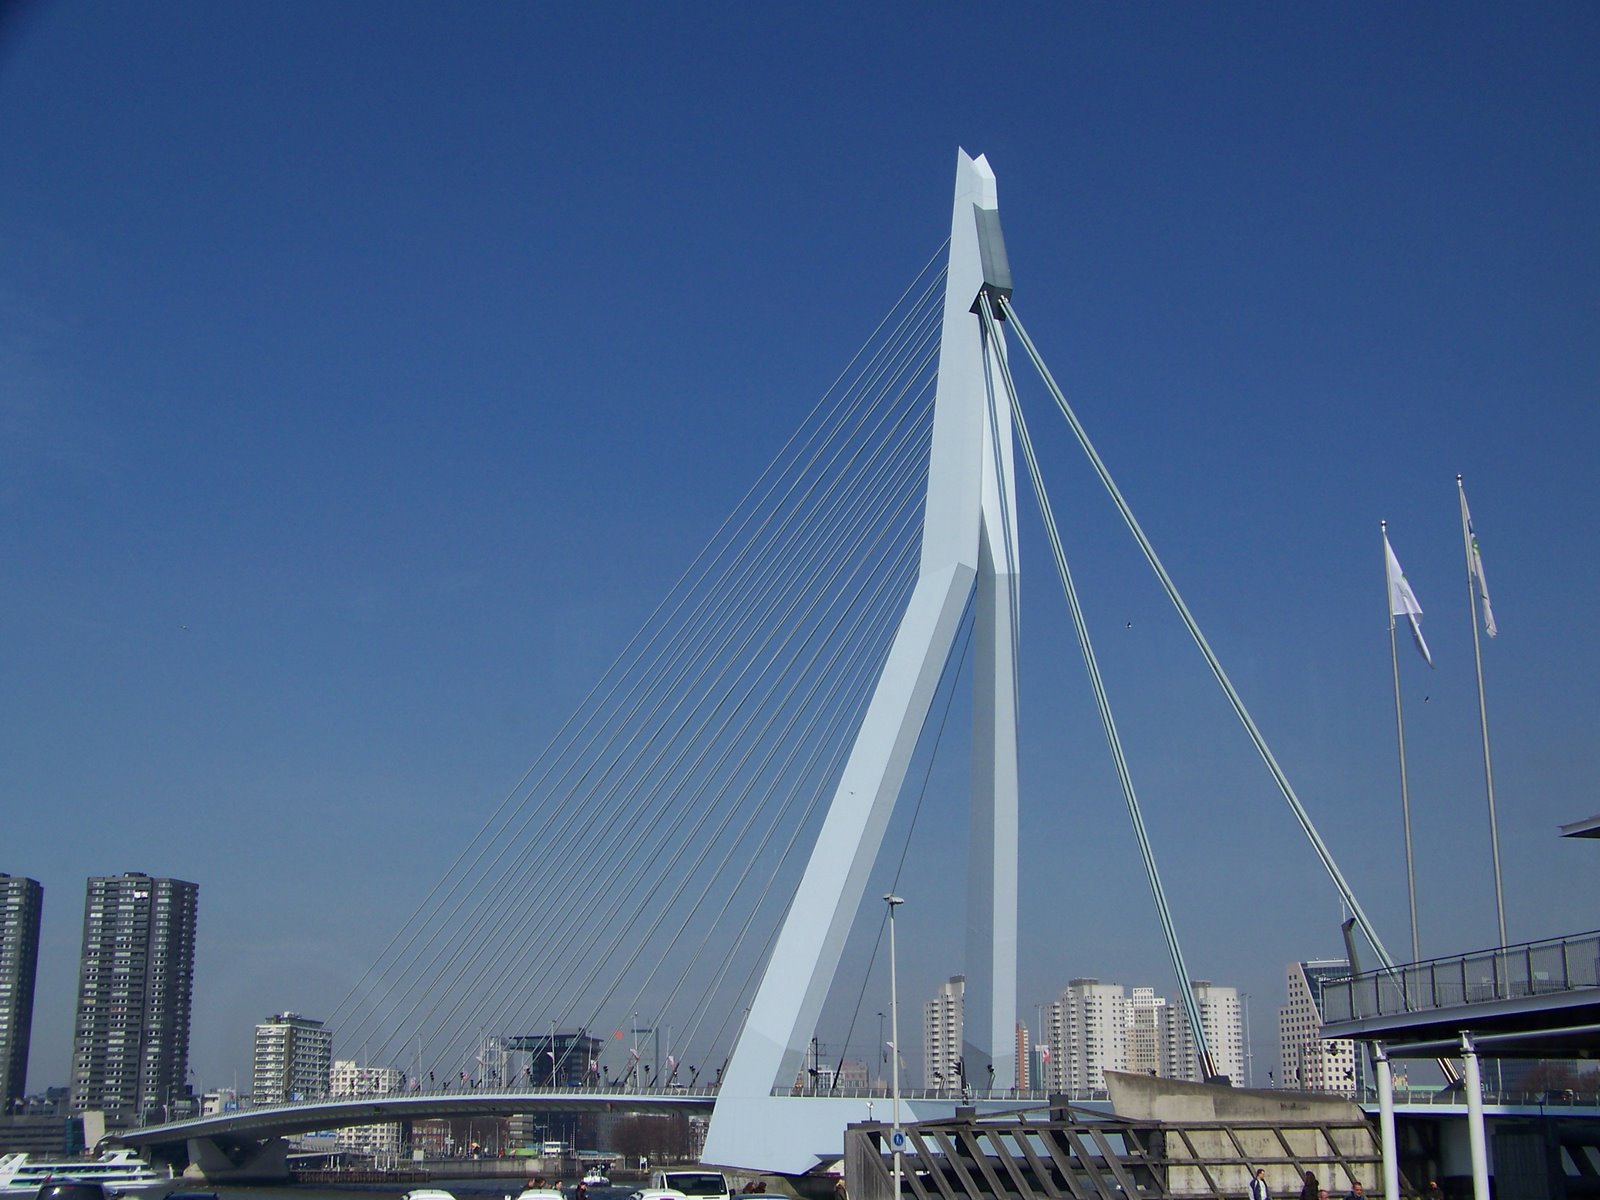 [Waterways+of+Belgium+&+Holland+2009+ROTTERDAM+3-31-2009+Swan+Bridge++444+(9).jpg]